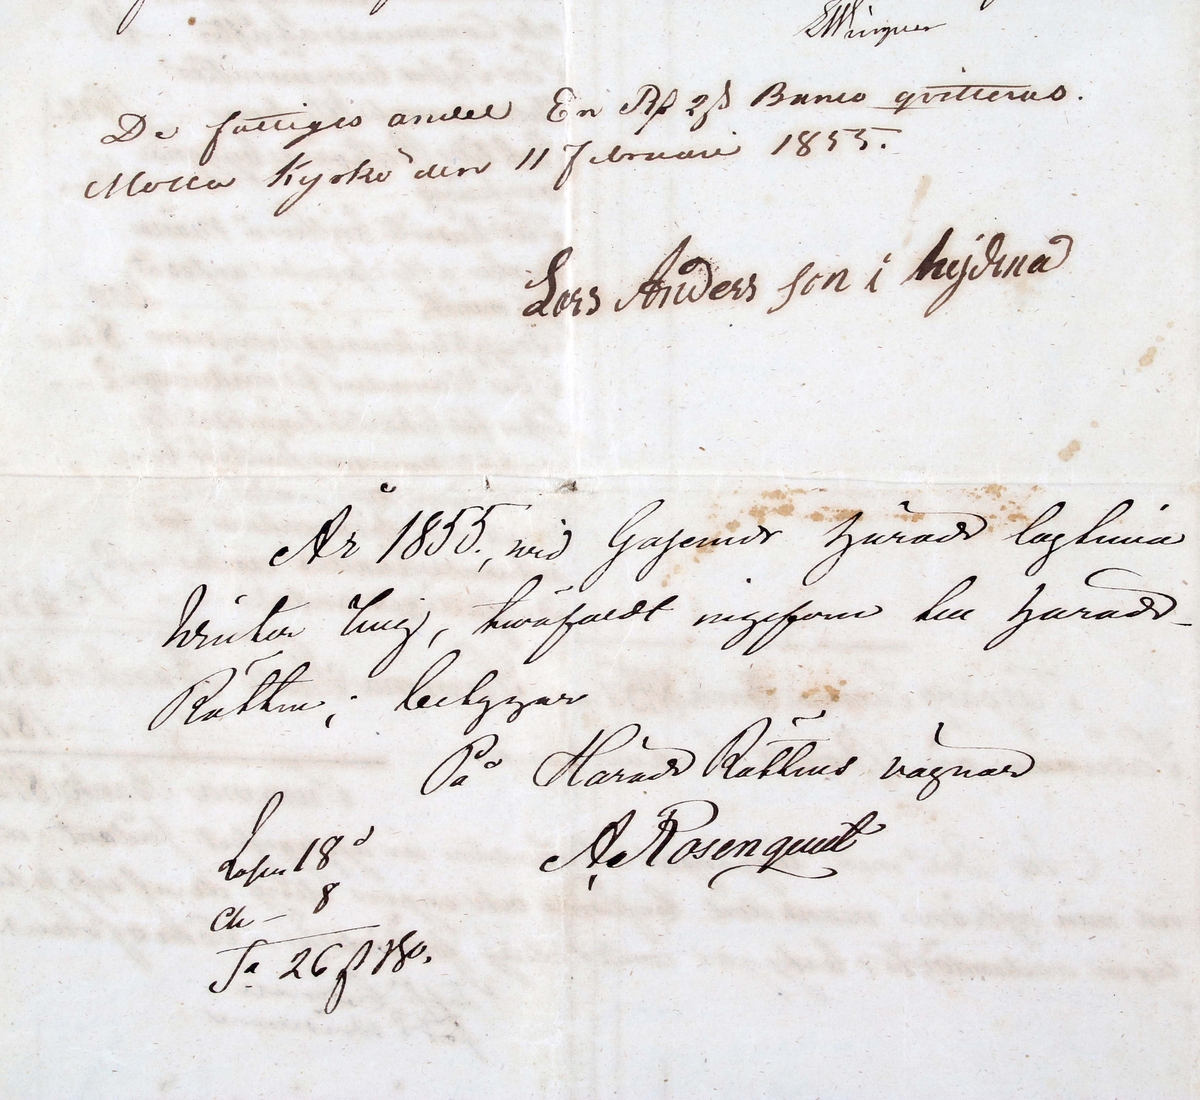 Handskriven bouppteckning från 28/12 1854, uti Molla kyrka, efter sergeanten C. G. Cedervall, Molla socken, Gäsene härad. 2 stora, vikta och trådbundna pappersark med handskriven text.